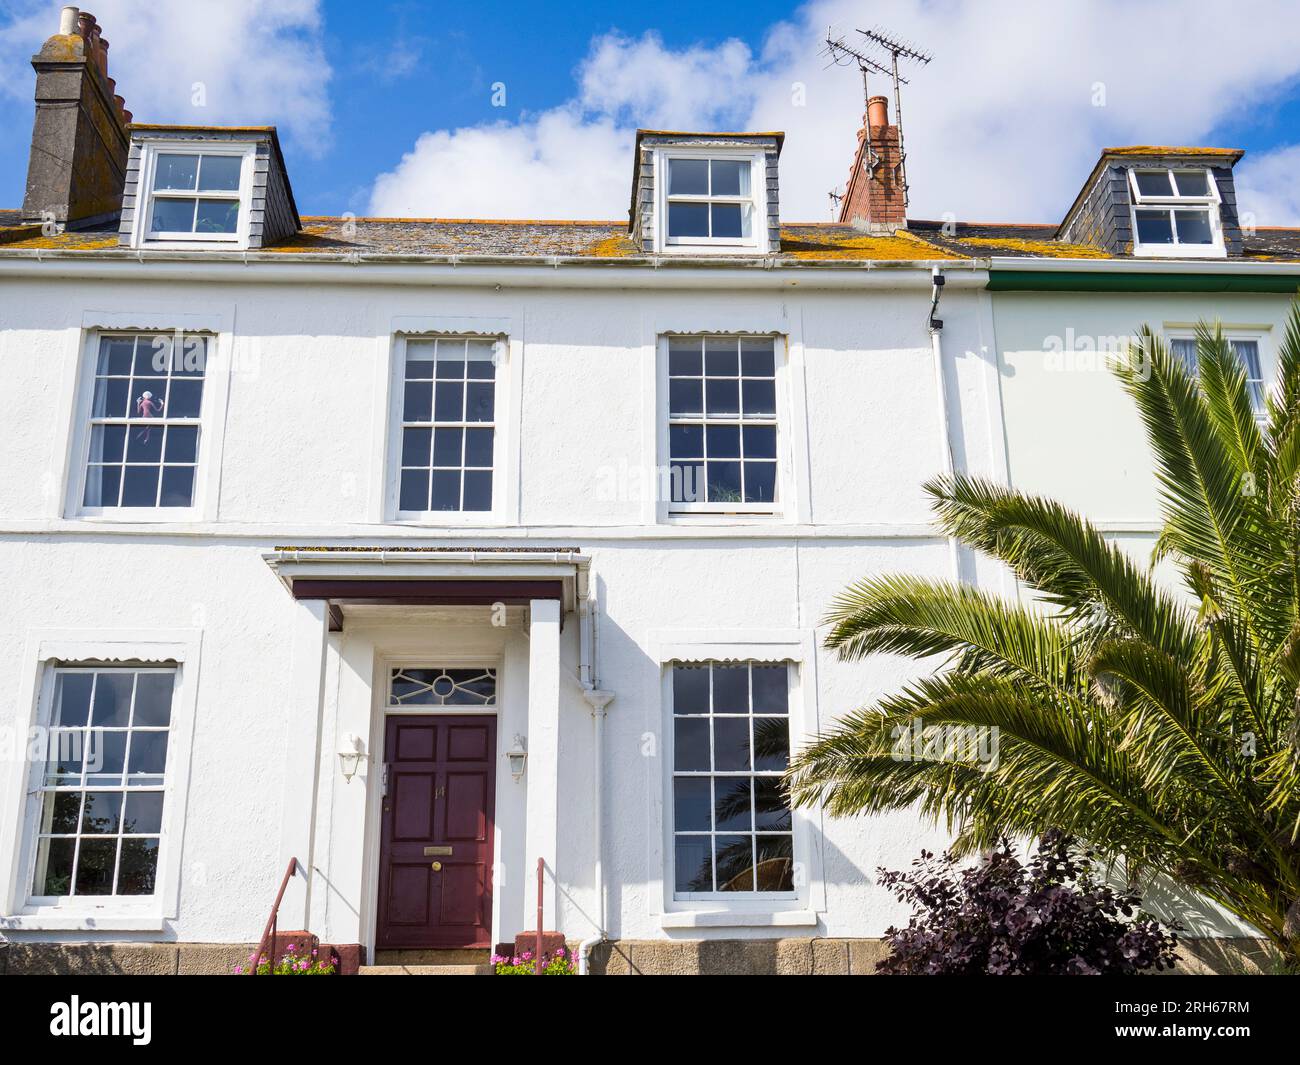 Logement de luxe avec fenêtres à lamelles, Penzance, Cornouailles, Angleterre, Royaume-Uni, GO. Banque D'Images